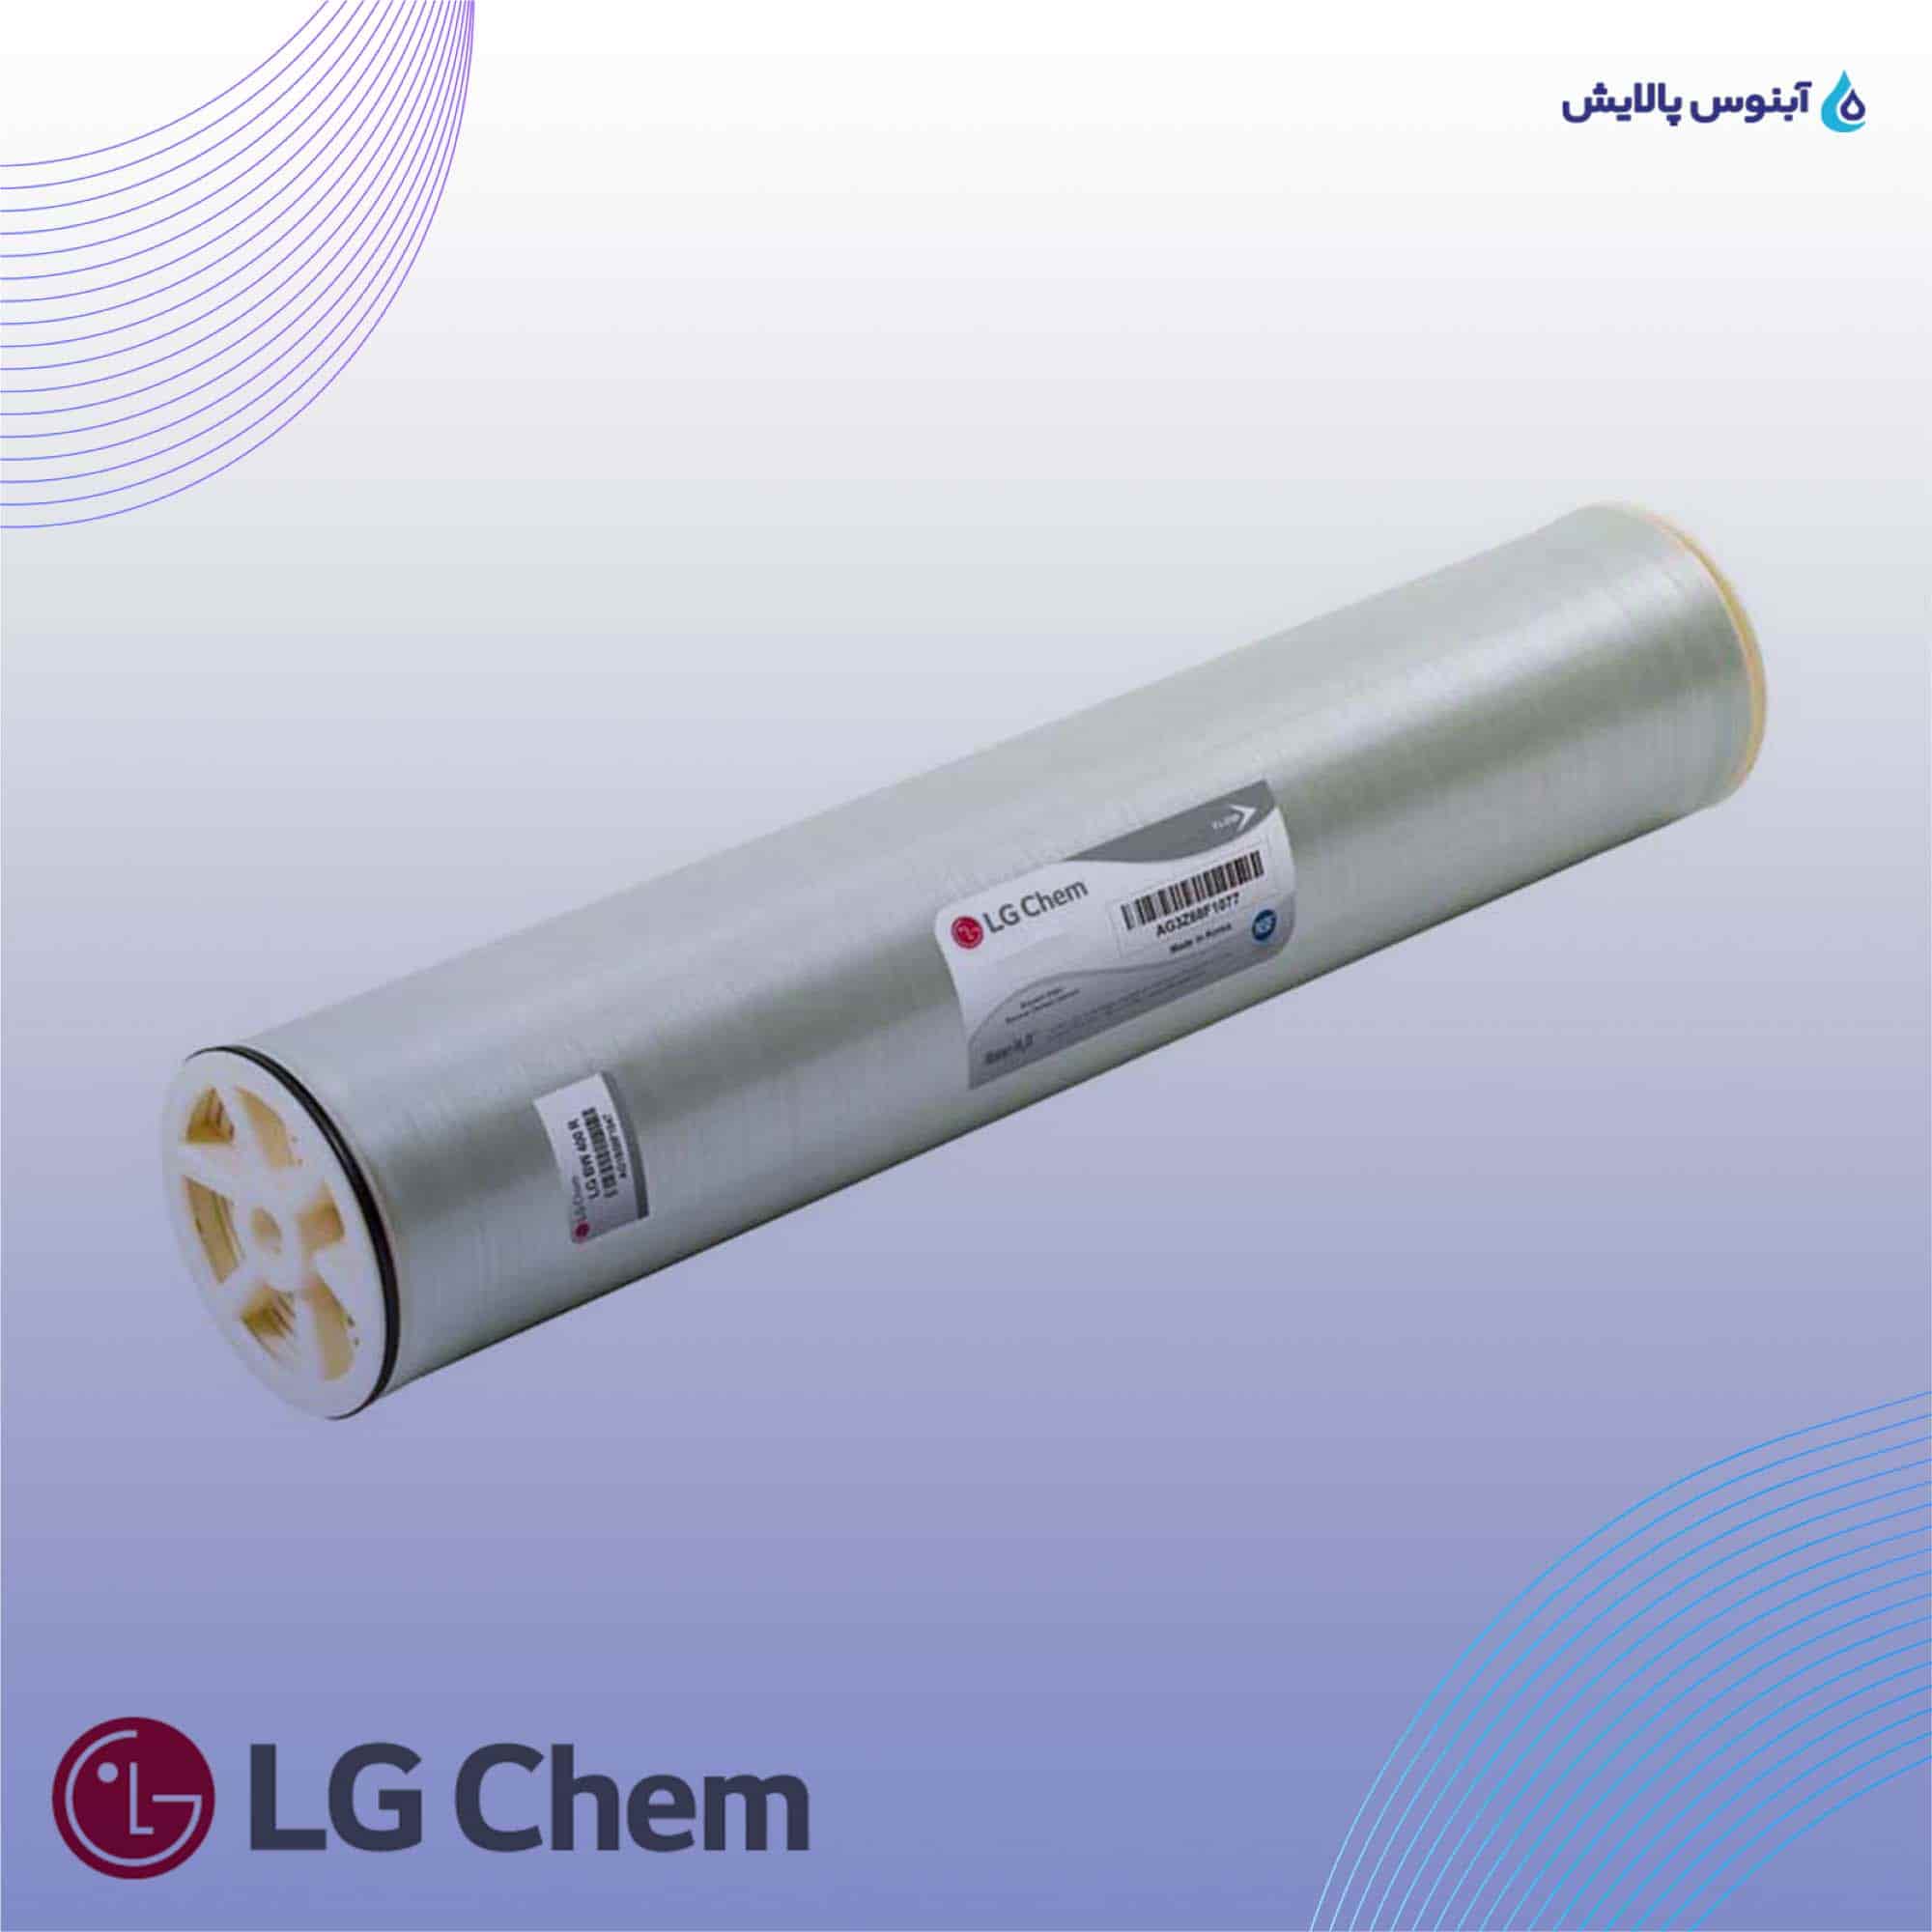 ممبران 8 اینچ ال جی کم (LG Chem) مدل LG BW 440 R